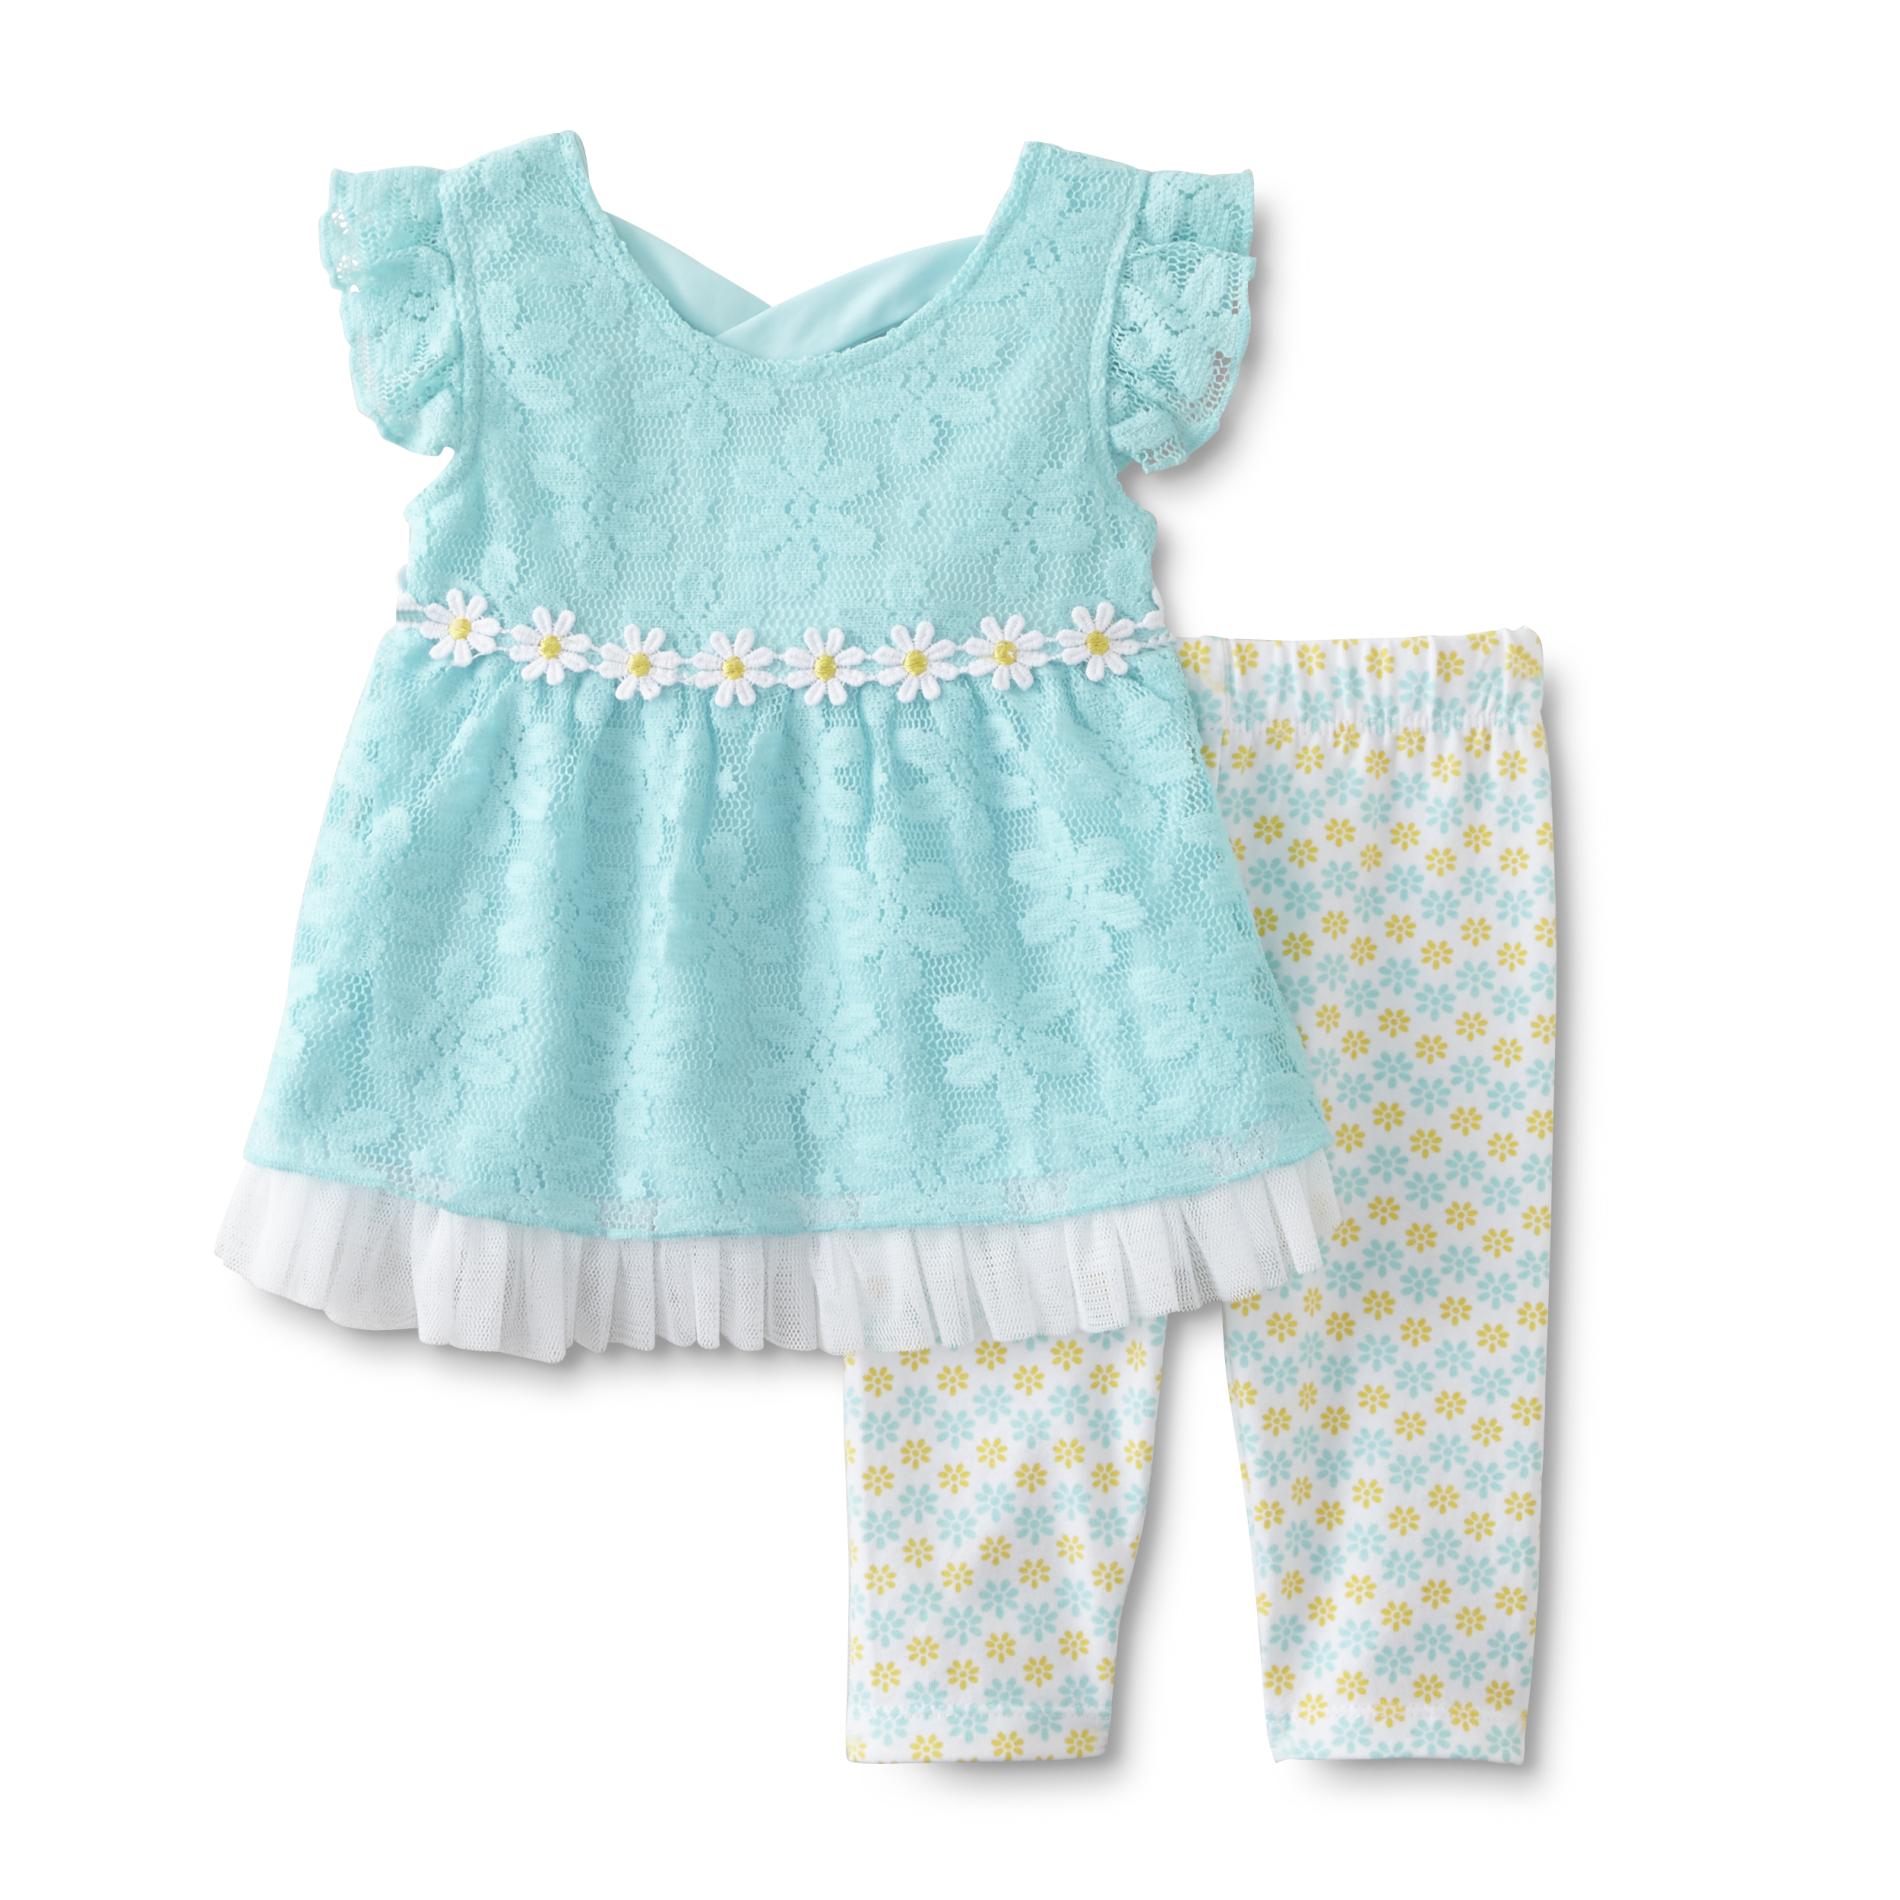 Newborn Girl's Lace Dress & Leggings - Daisy